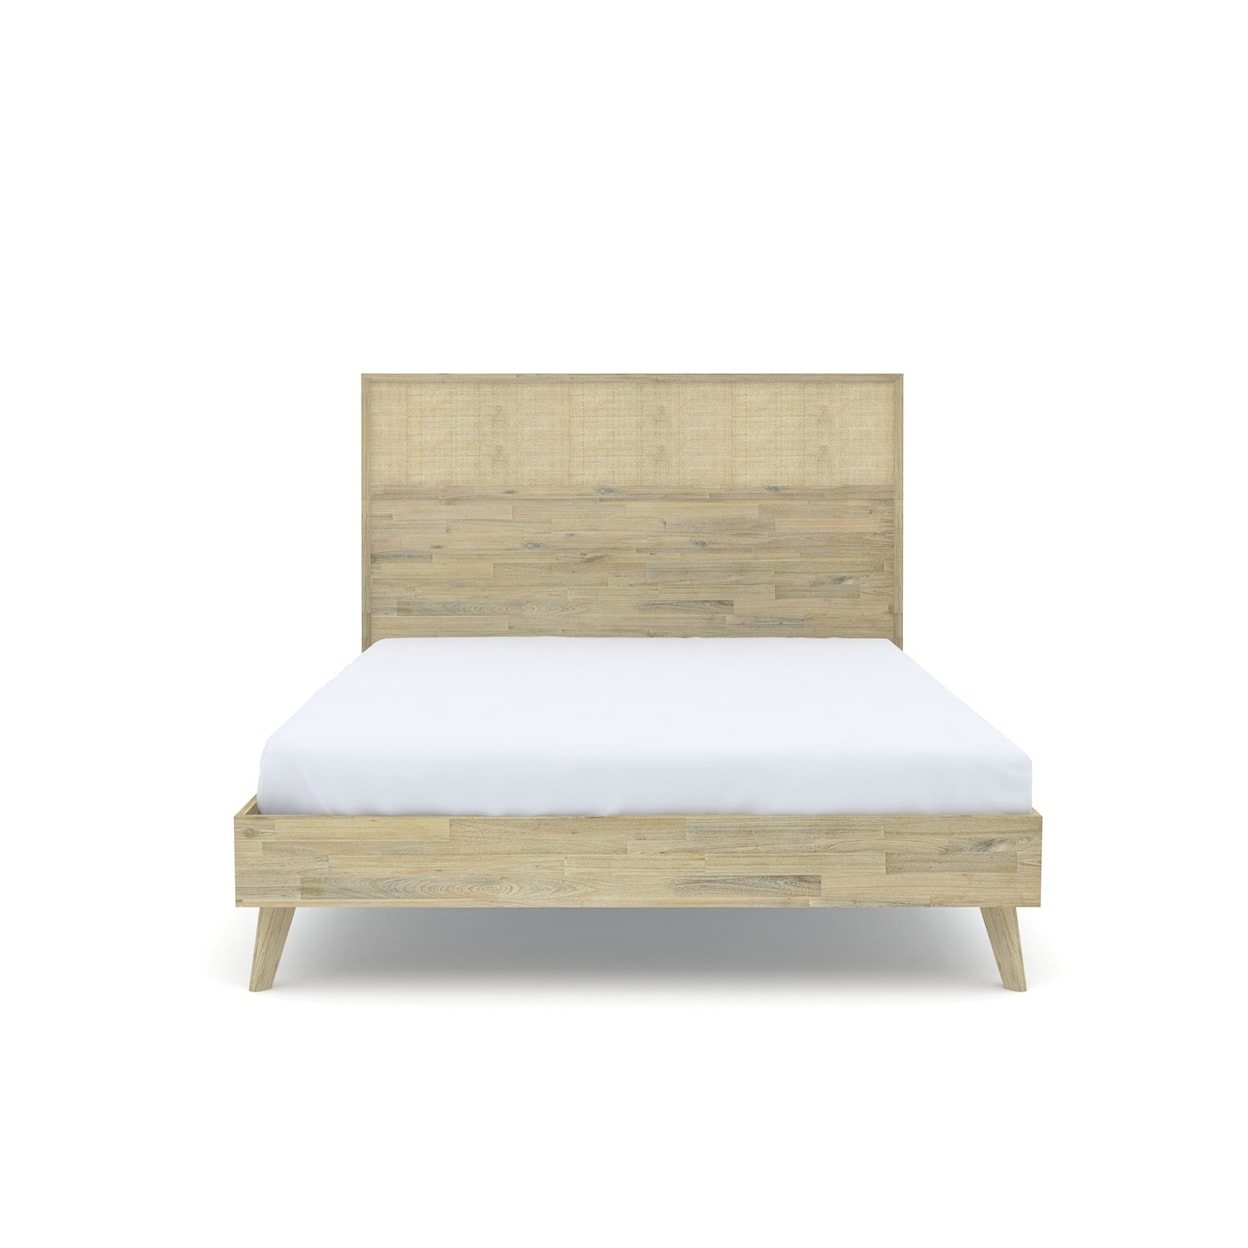 Design Evolution Andes King Bed 